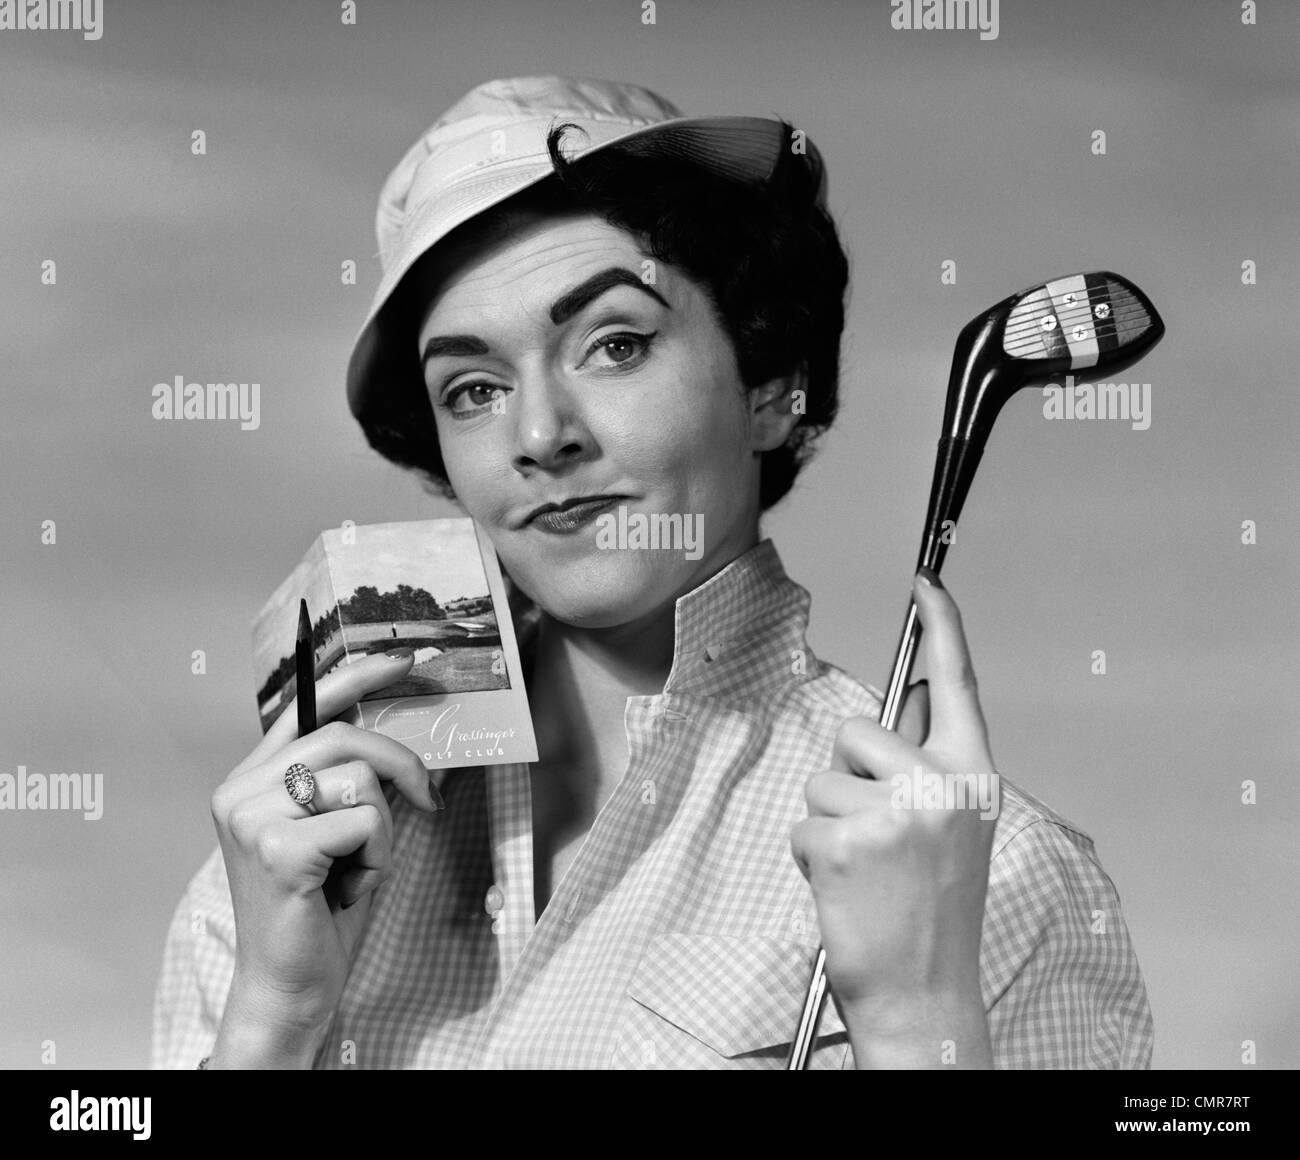 Années 1950 Années 1960 PORTRAIT WOMAN IN HAT HOLDING GOLF CLUB & SCORECARD AVEC LOOK PERTURBÉ SUR LE VISAGE LOOKING AT CAMERA Banque D'Images